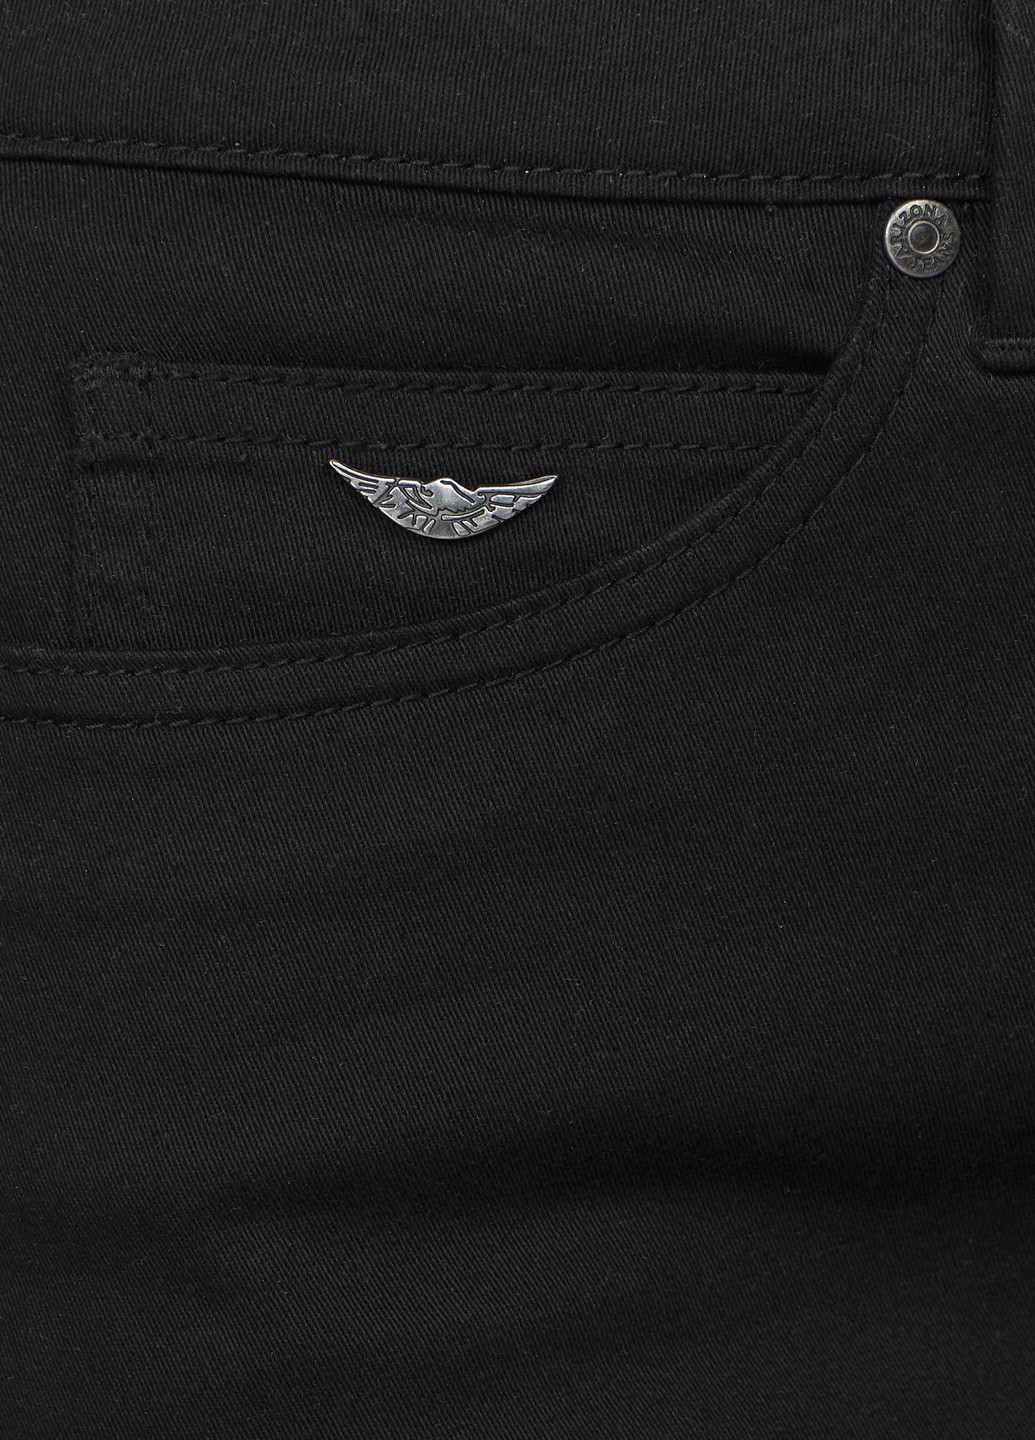 Черная джинсовая однотонная юбка Arizona карандаш